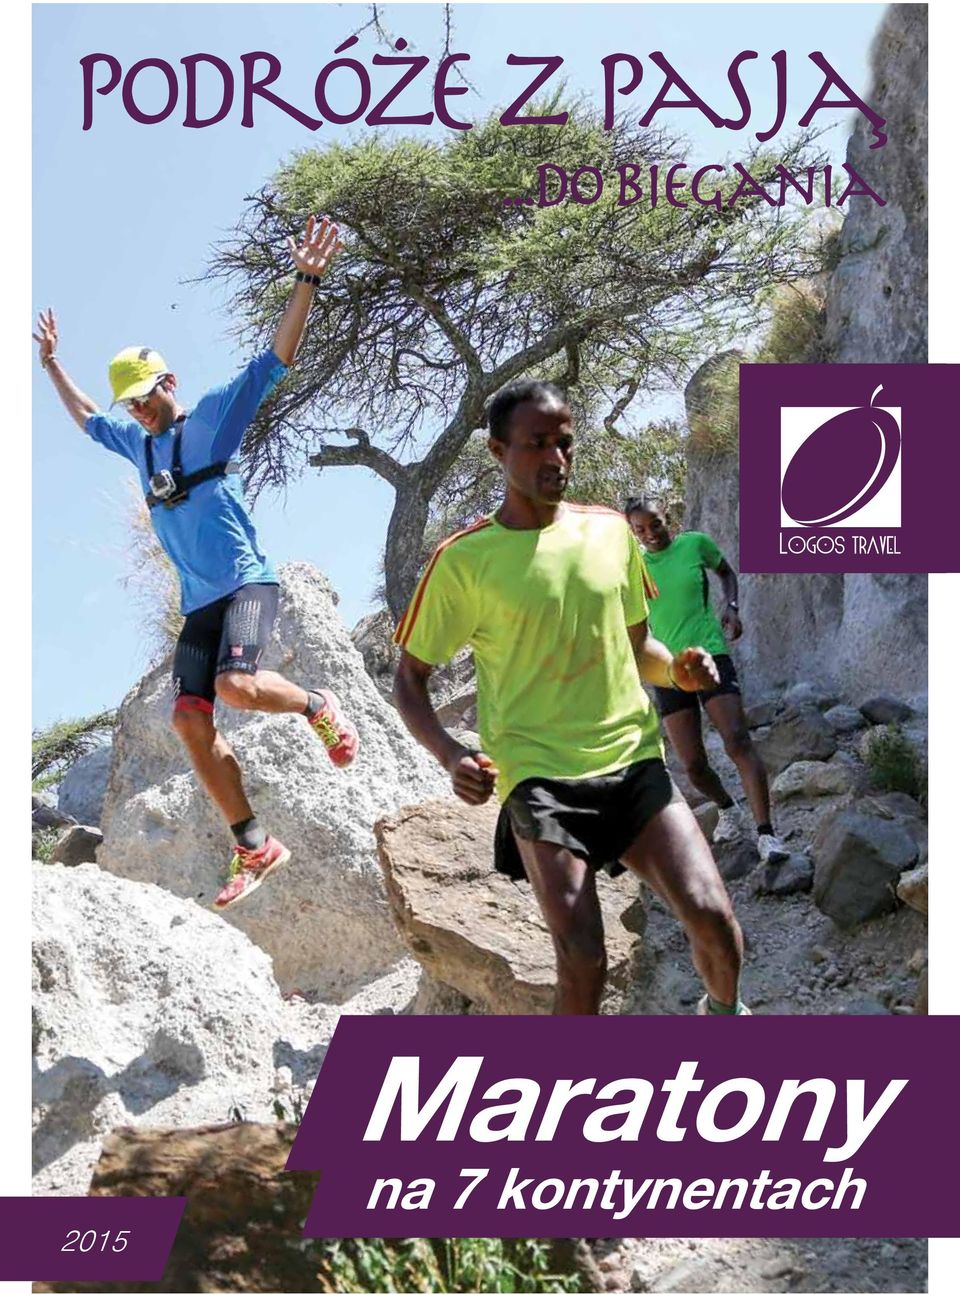 2015 Maratony